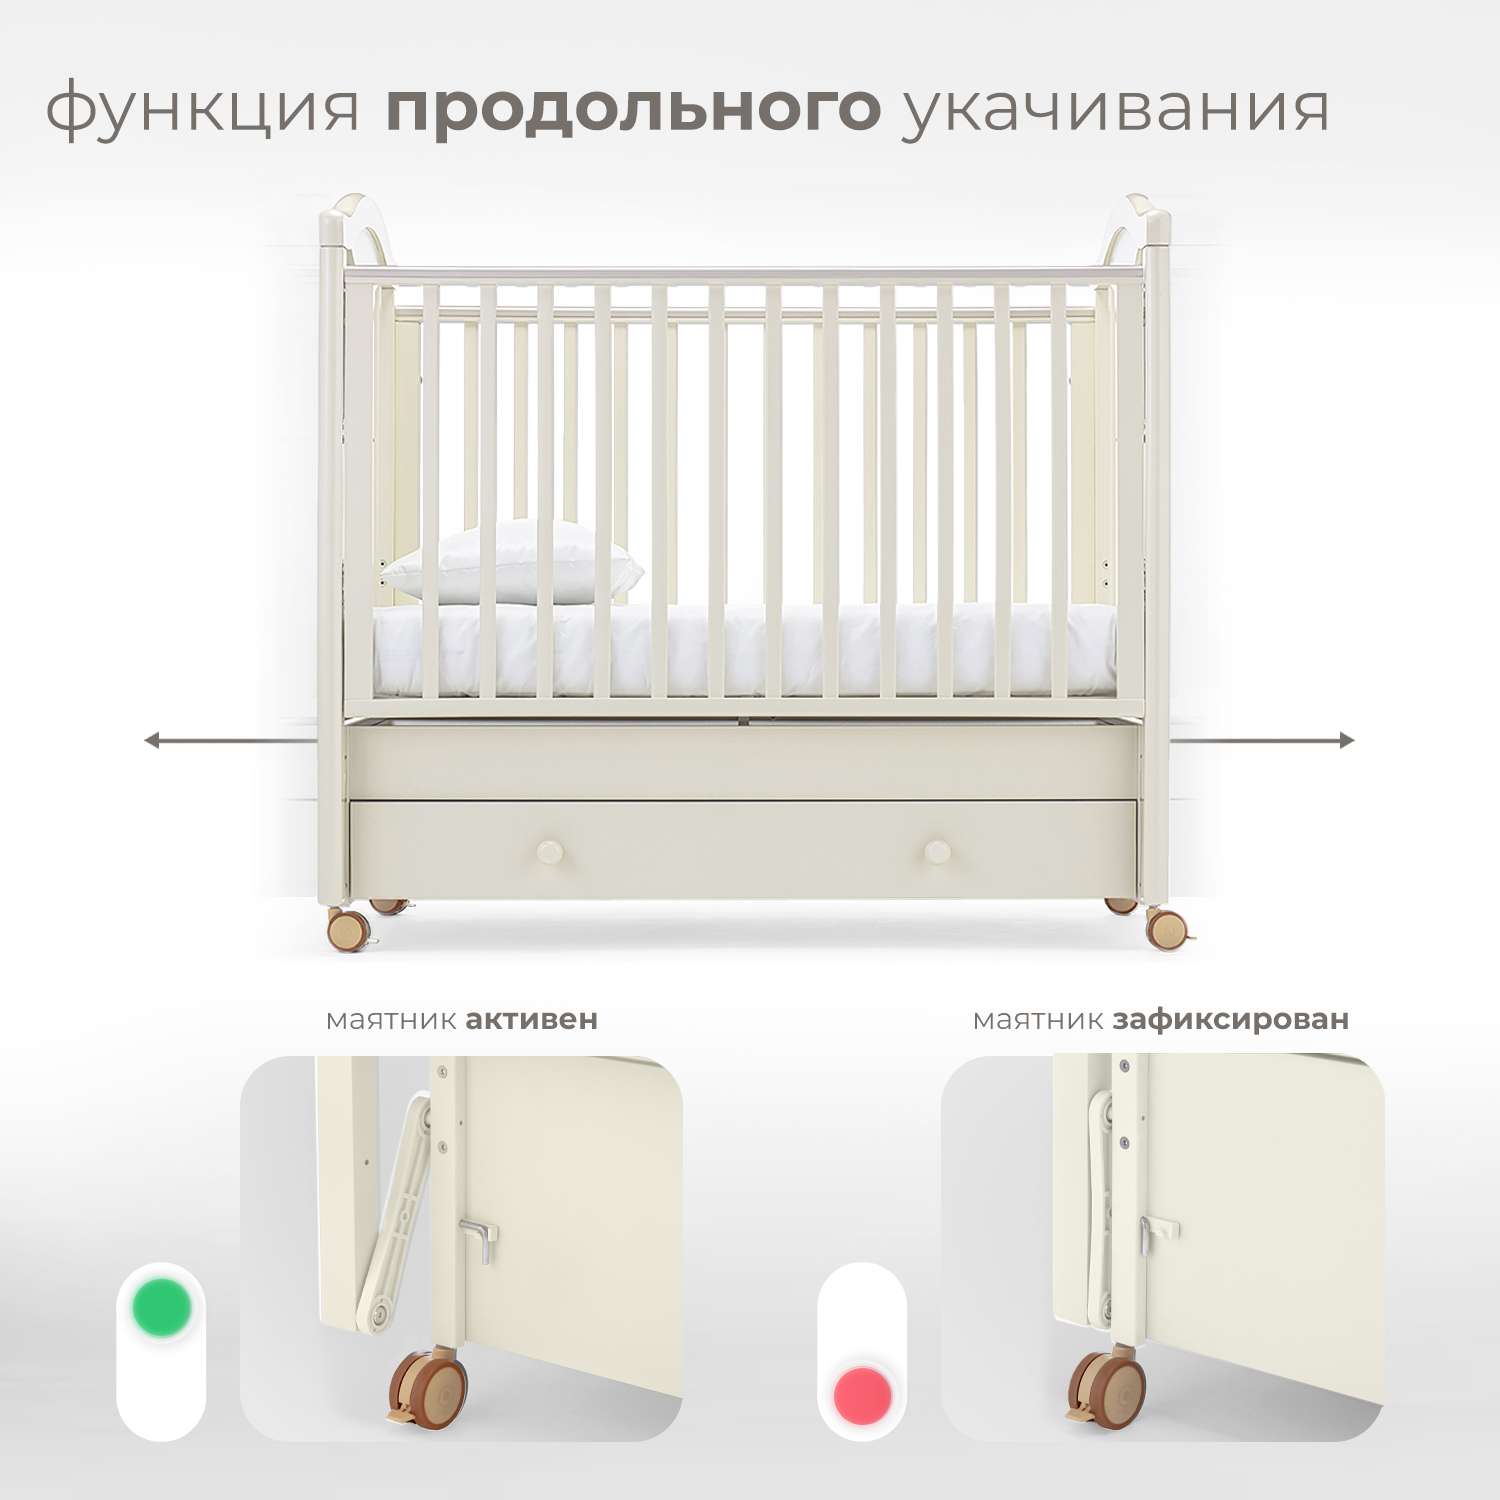 Детская кроватка Nuovita Lusso Swing прямоугольная, продольный маятник (ваниль) - фото 4